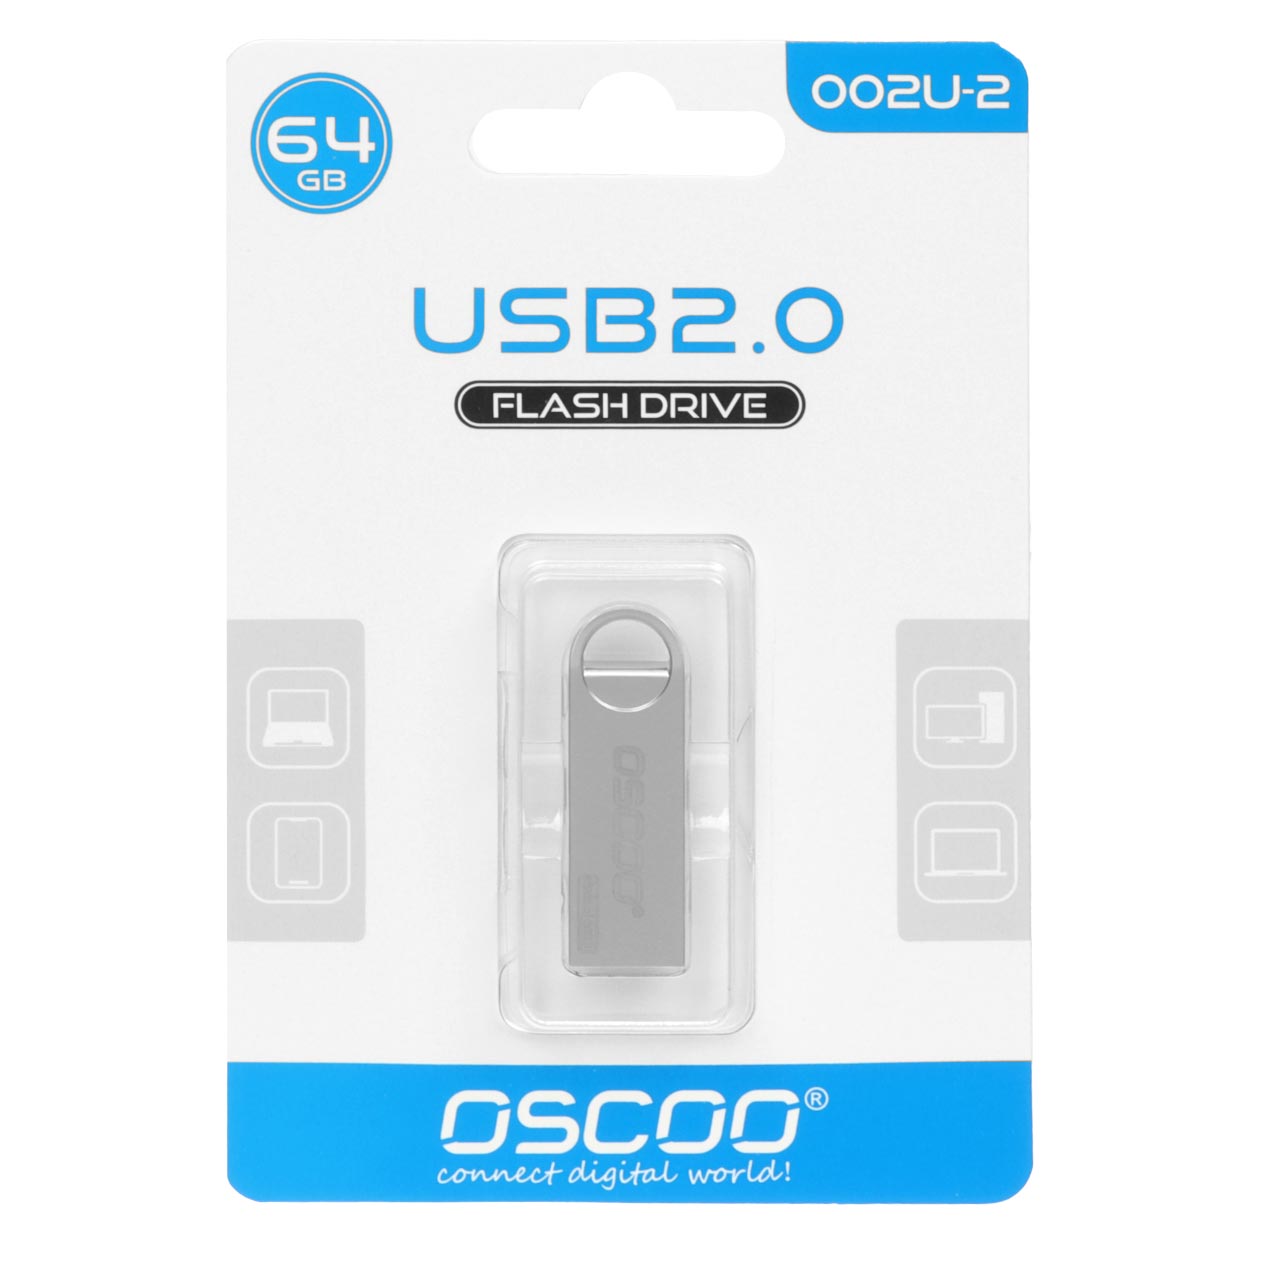 فلش OSCOO 002U-2 USB2.0 Flash Memory-64GB نقره ای